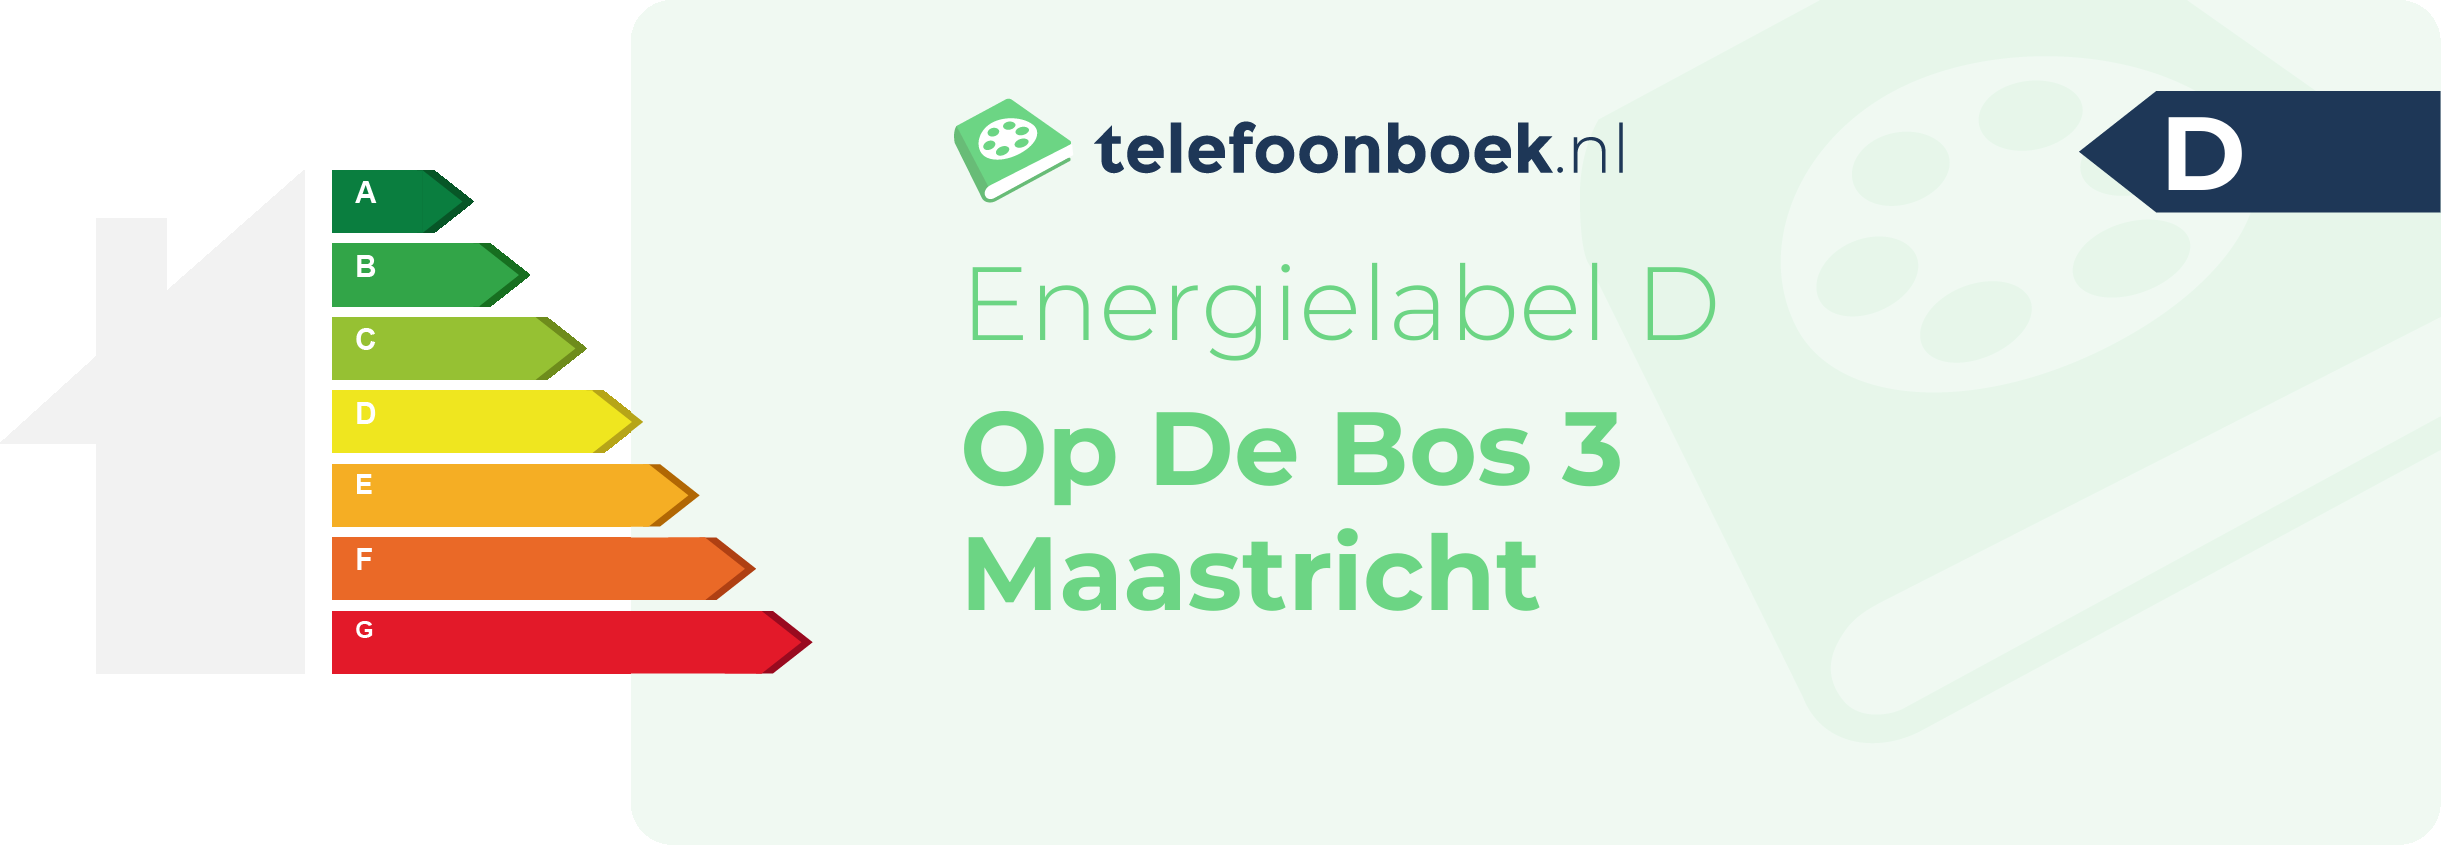 Energielabel Op De Bos 3 Maastricht